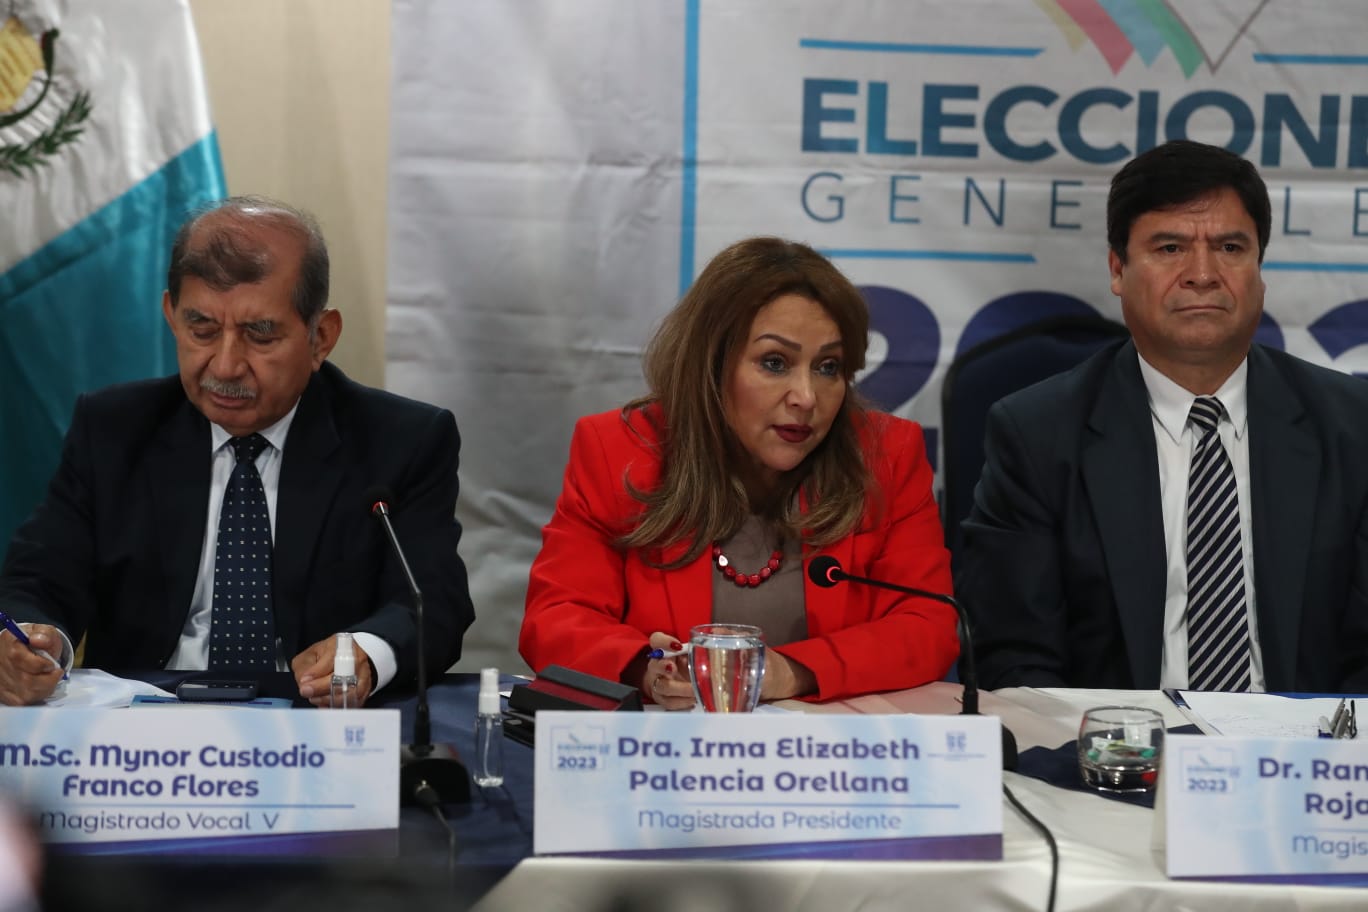 Expertos advierte que la incertidumbre puede desencadenar la conflictividad electoral. (Foto Prensa Libre: Roberto López).